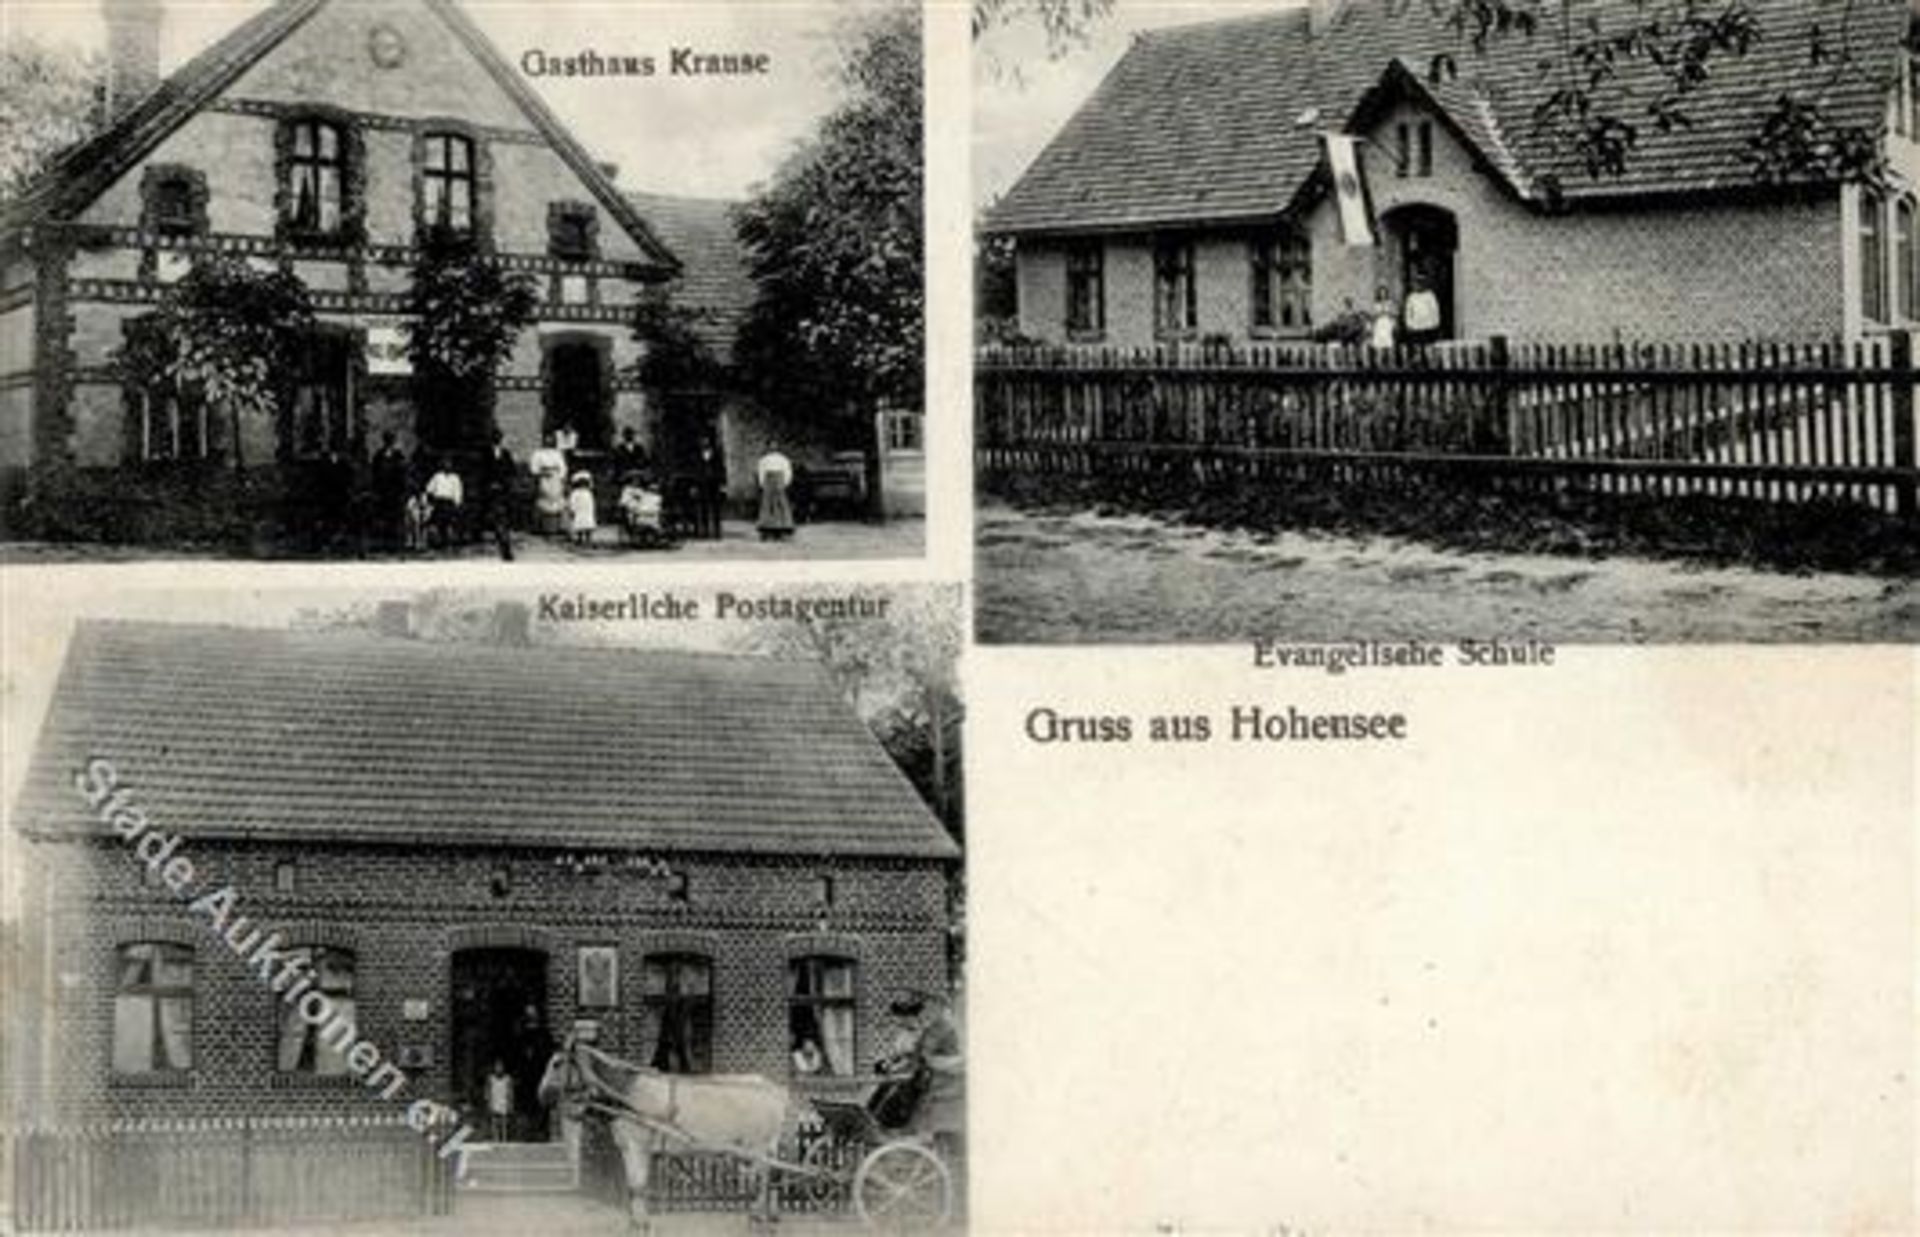 Hohensee (O2221) Gasthaus Krause Postamt II (Stauchung)Dieses Los wird in einer online-Auktion